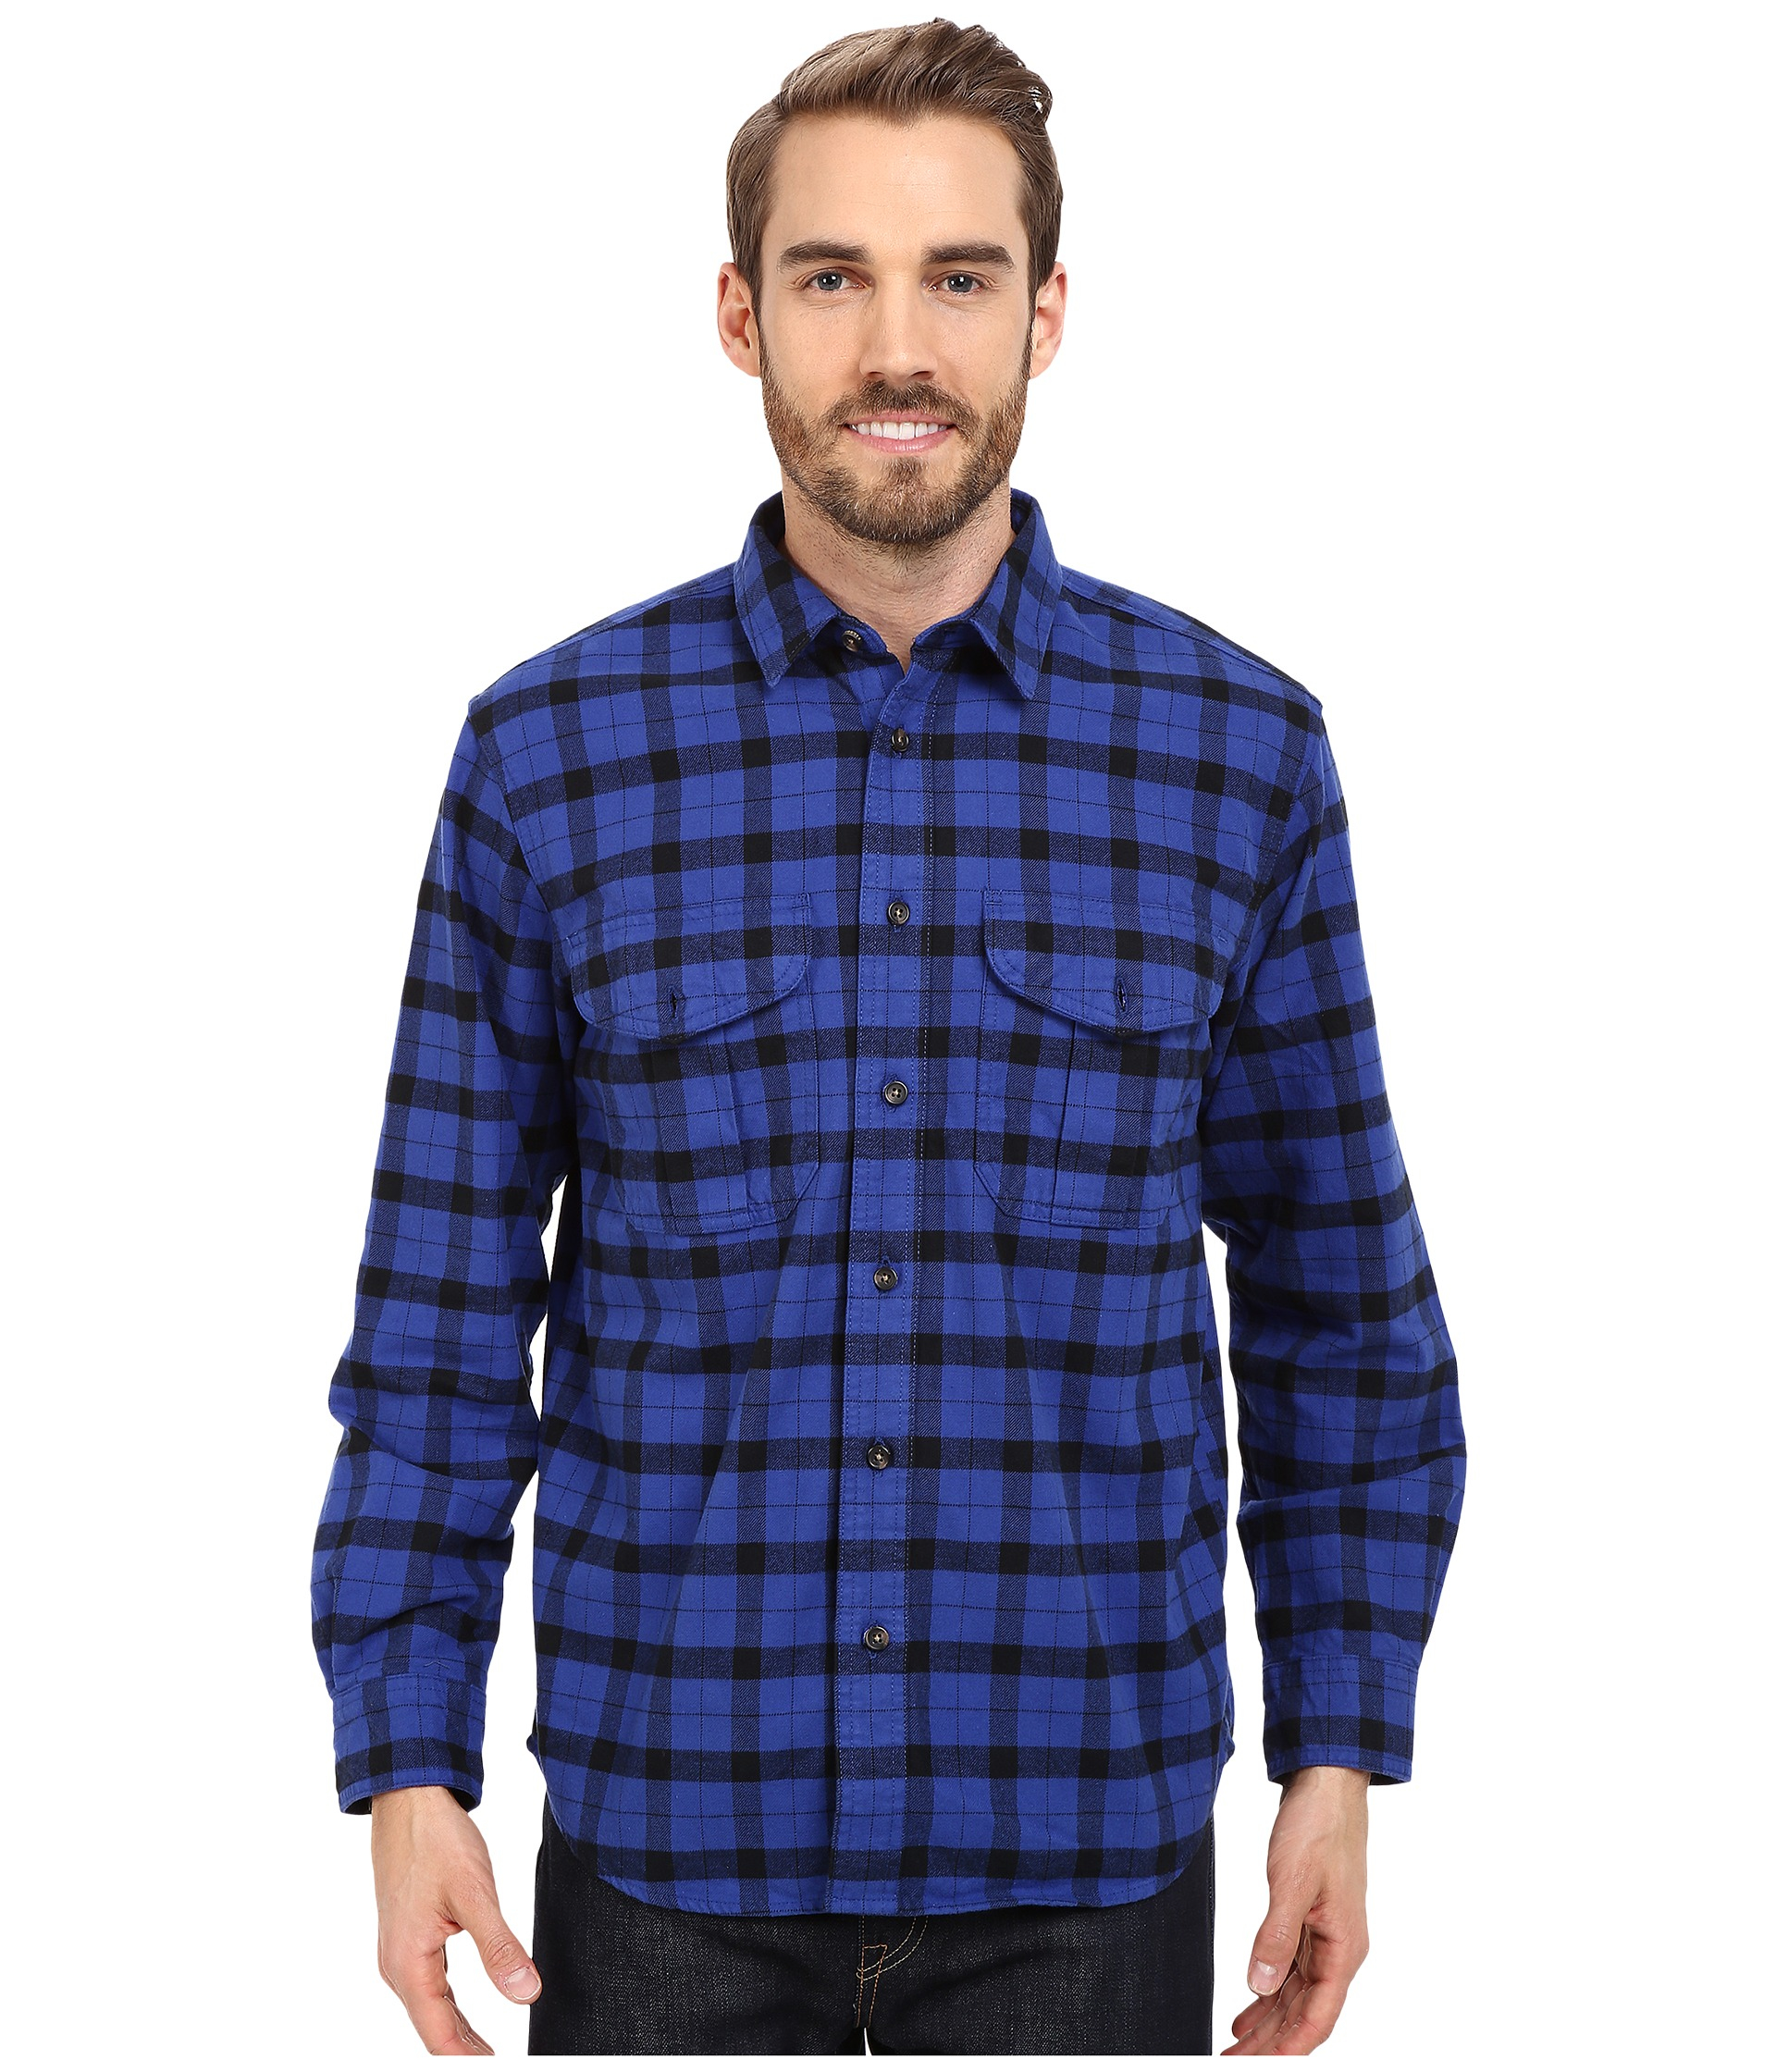 Filson Cotton Alaskan Guide Shirt in Blue/Black (Blue) for Men - Lyst